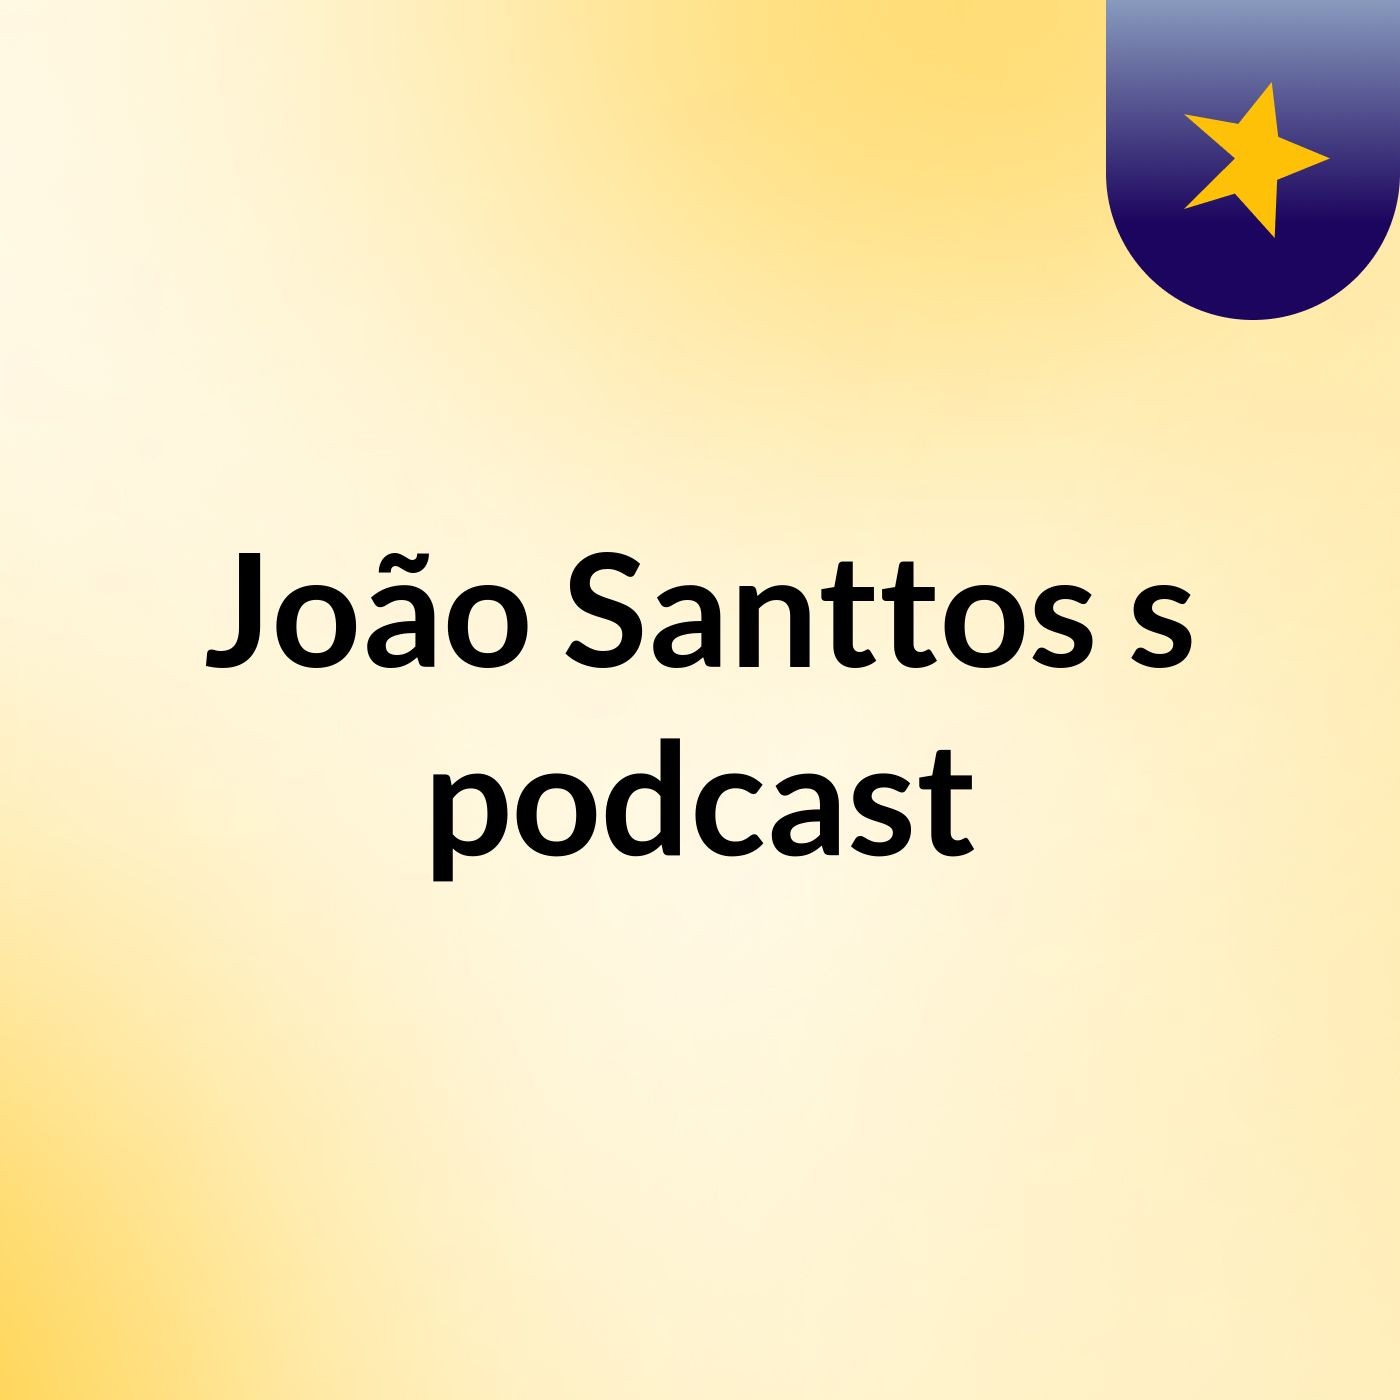 João Santtos's podcast